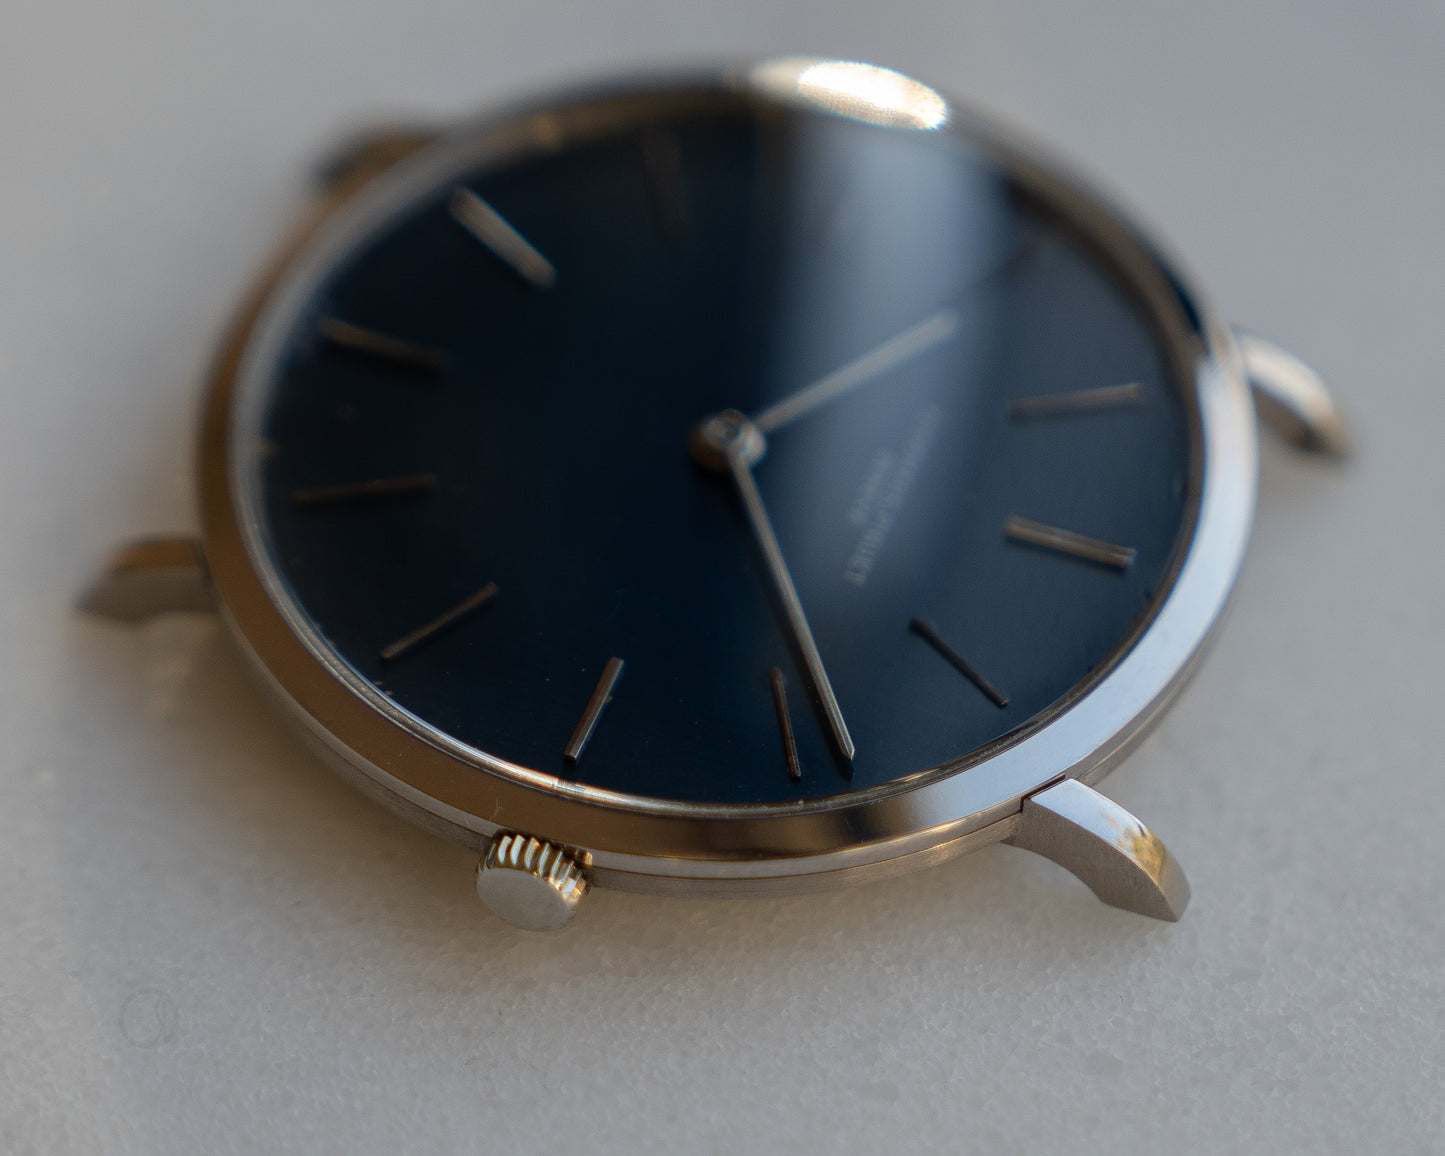 Audemars Piguet White Gold Ultra thin dress watch, Blue dial, Caliber 2001